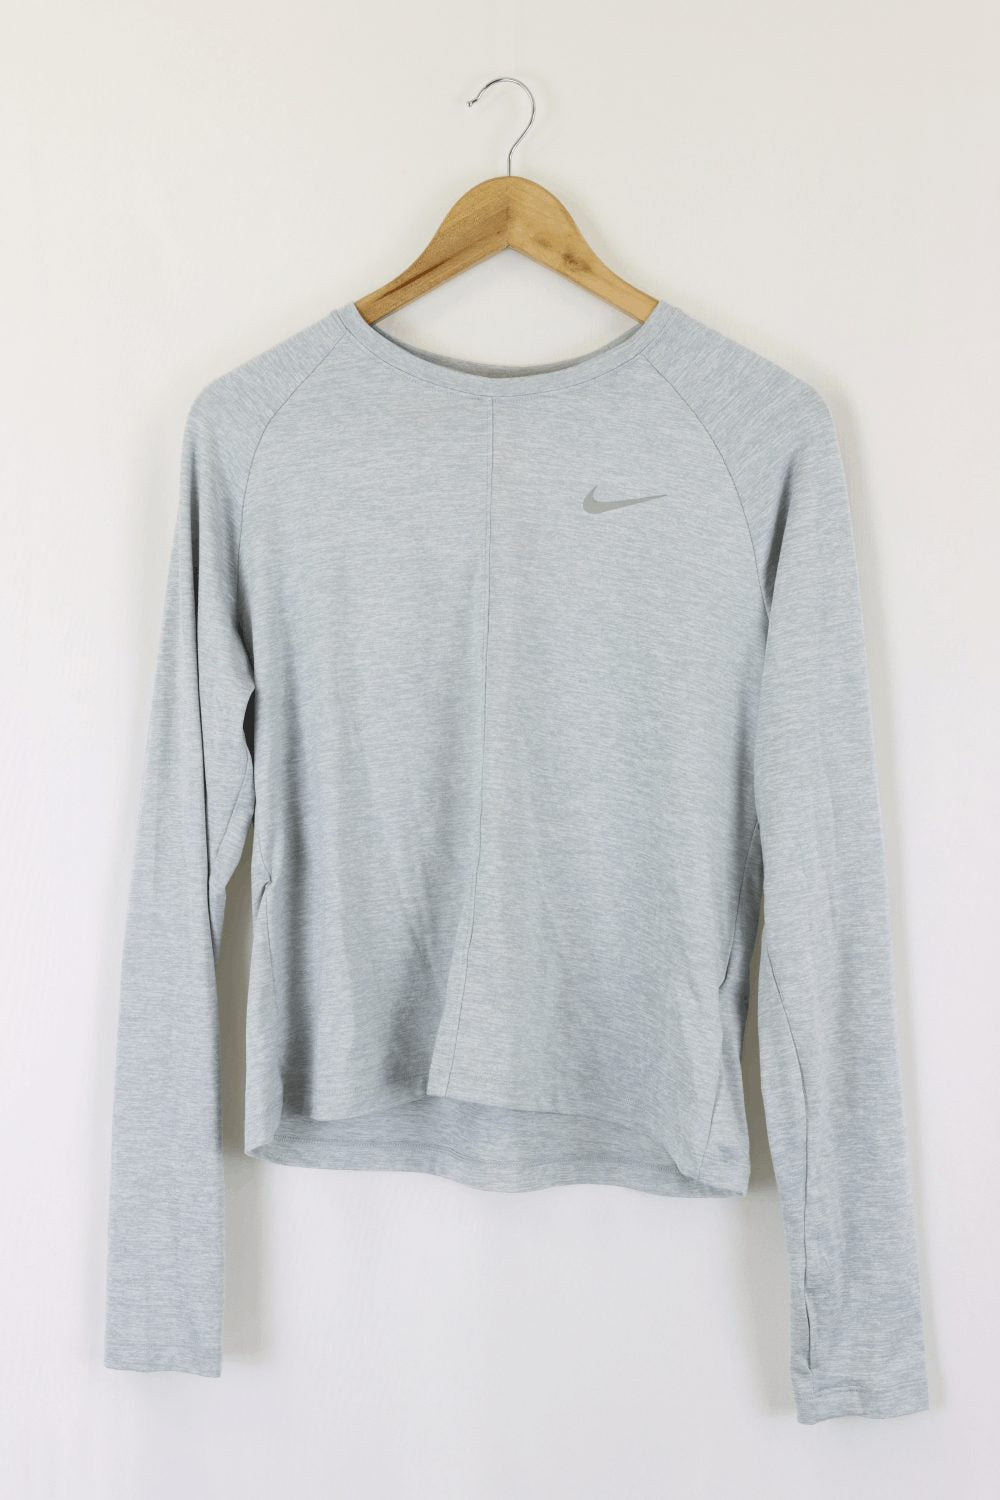 Nike Grey Long Sleeve Top M